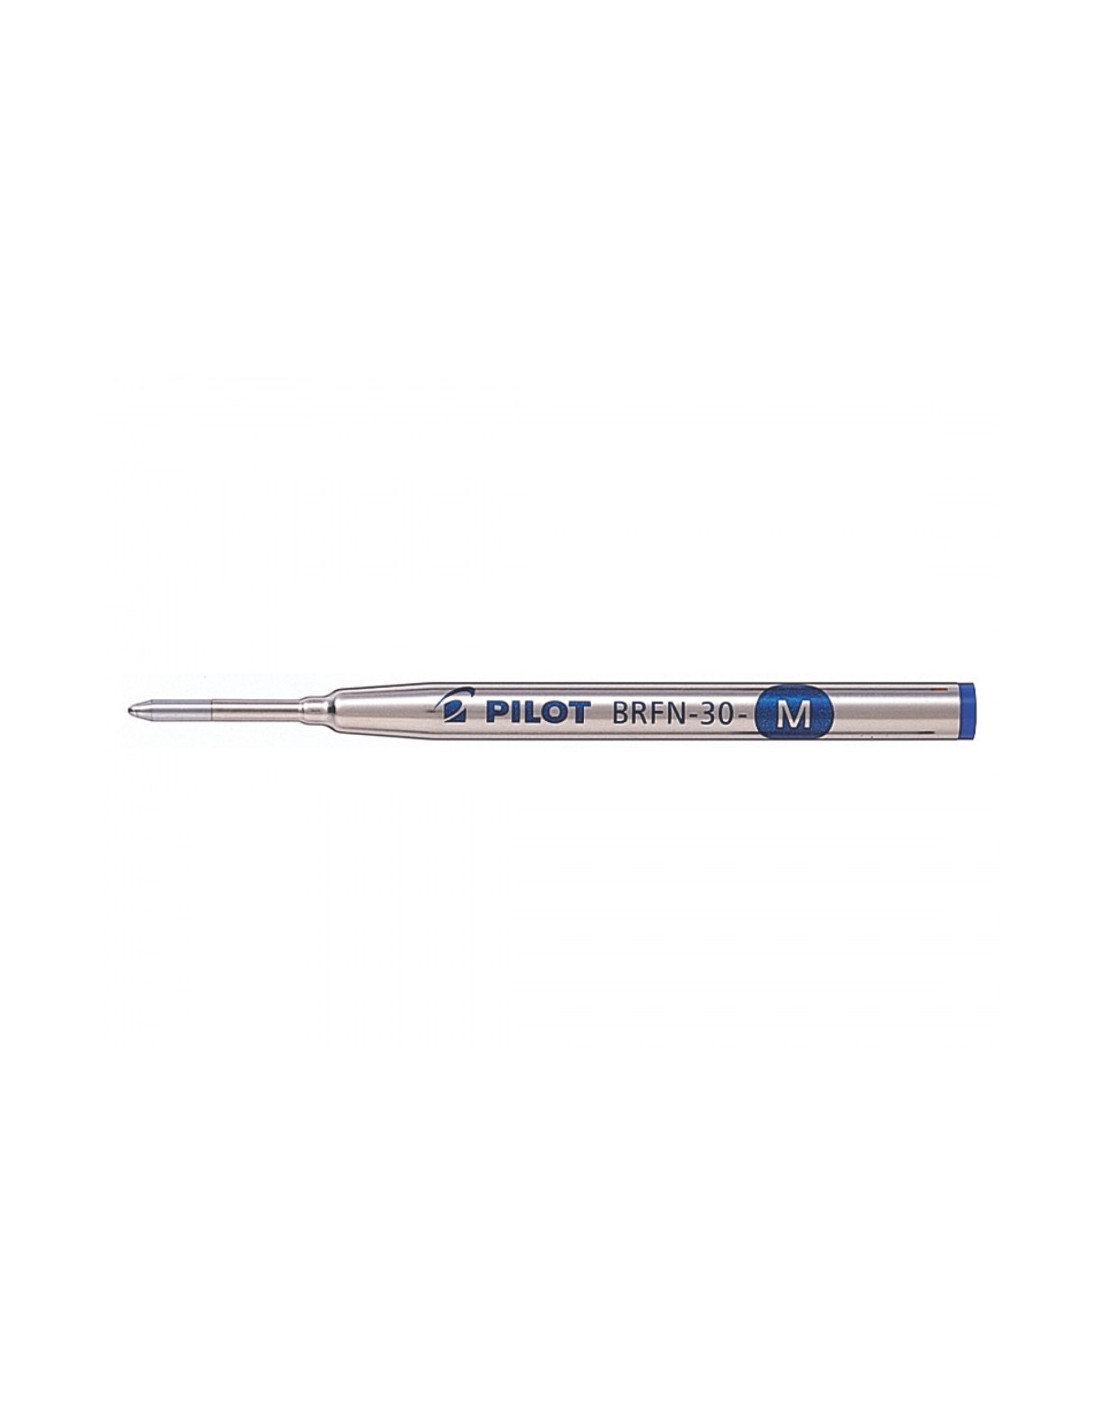 123encre recharge pour stylo à bille effaçable (3 pièces) - bleu 123inkt